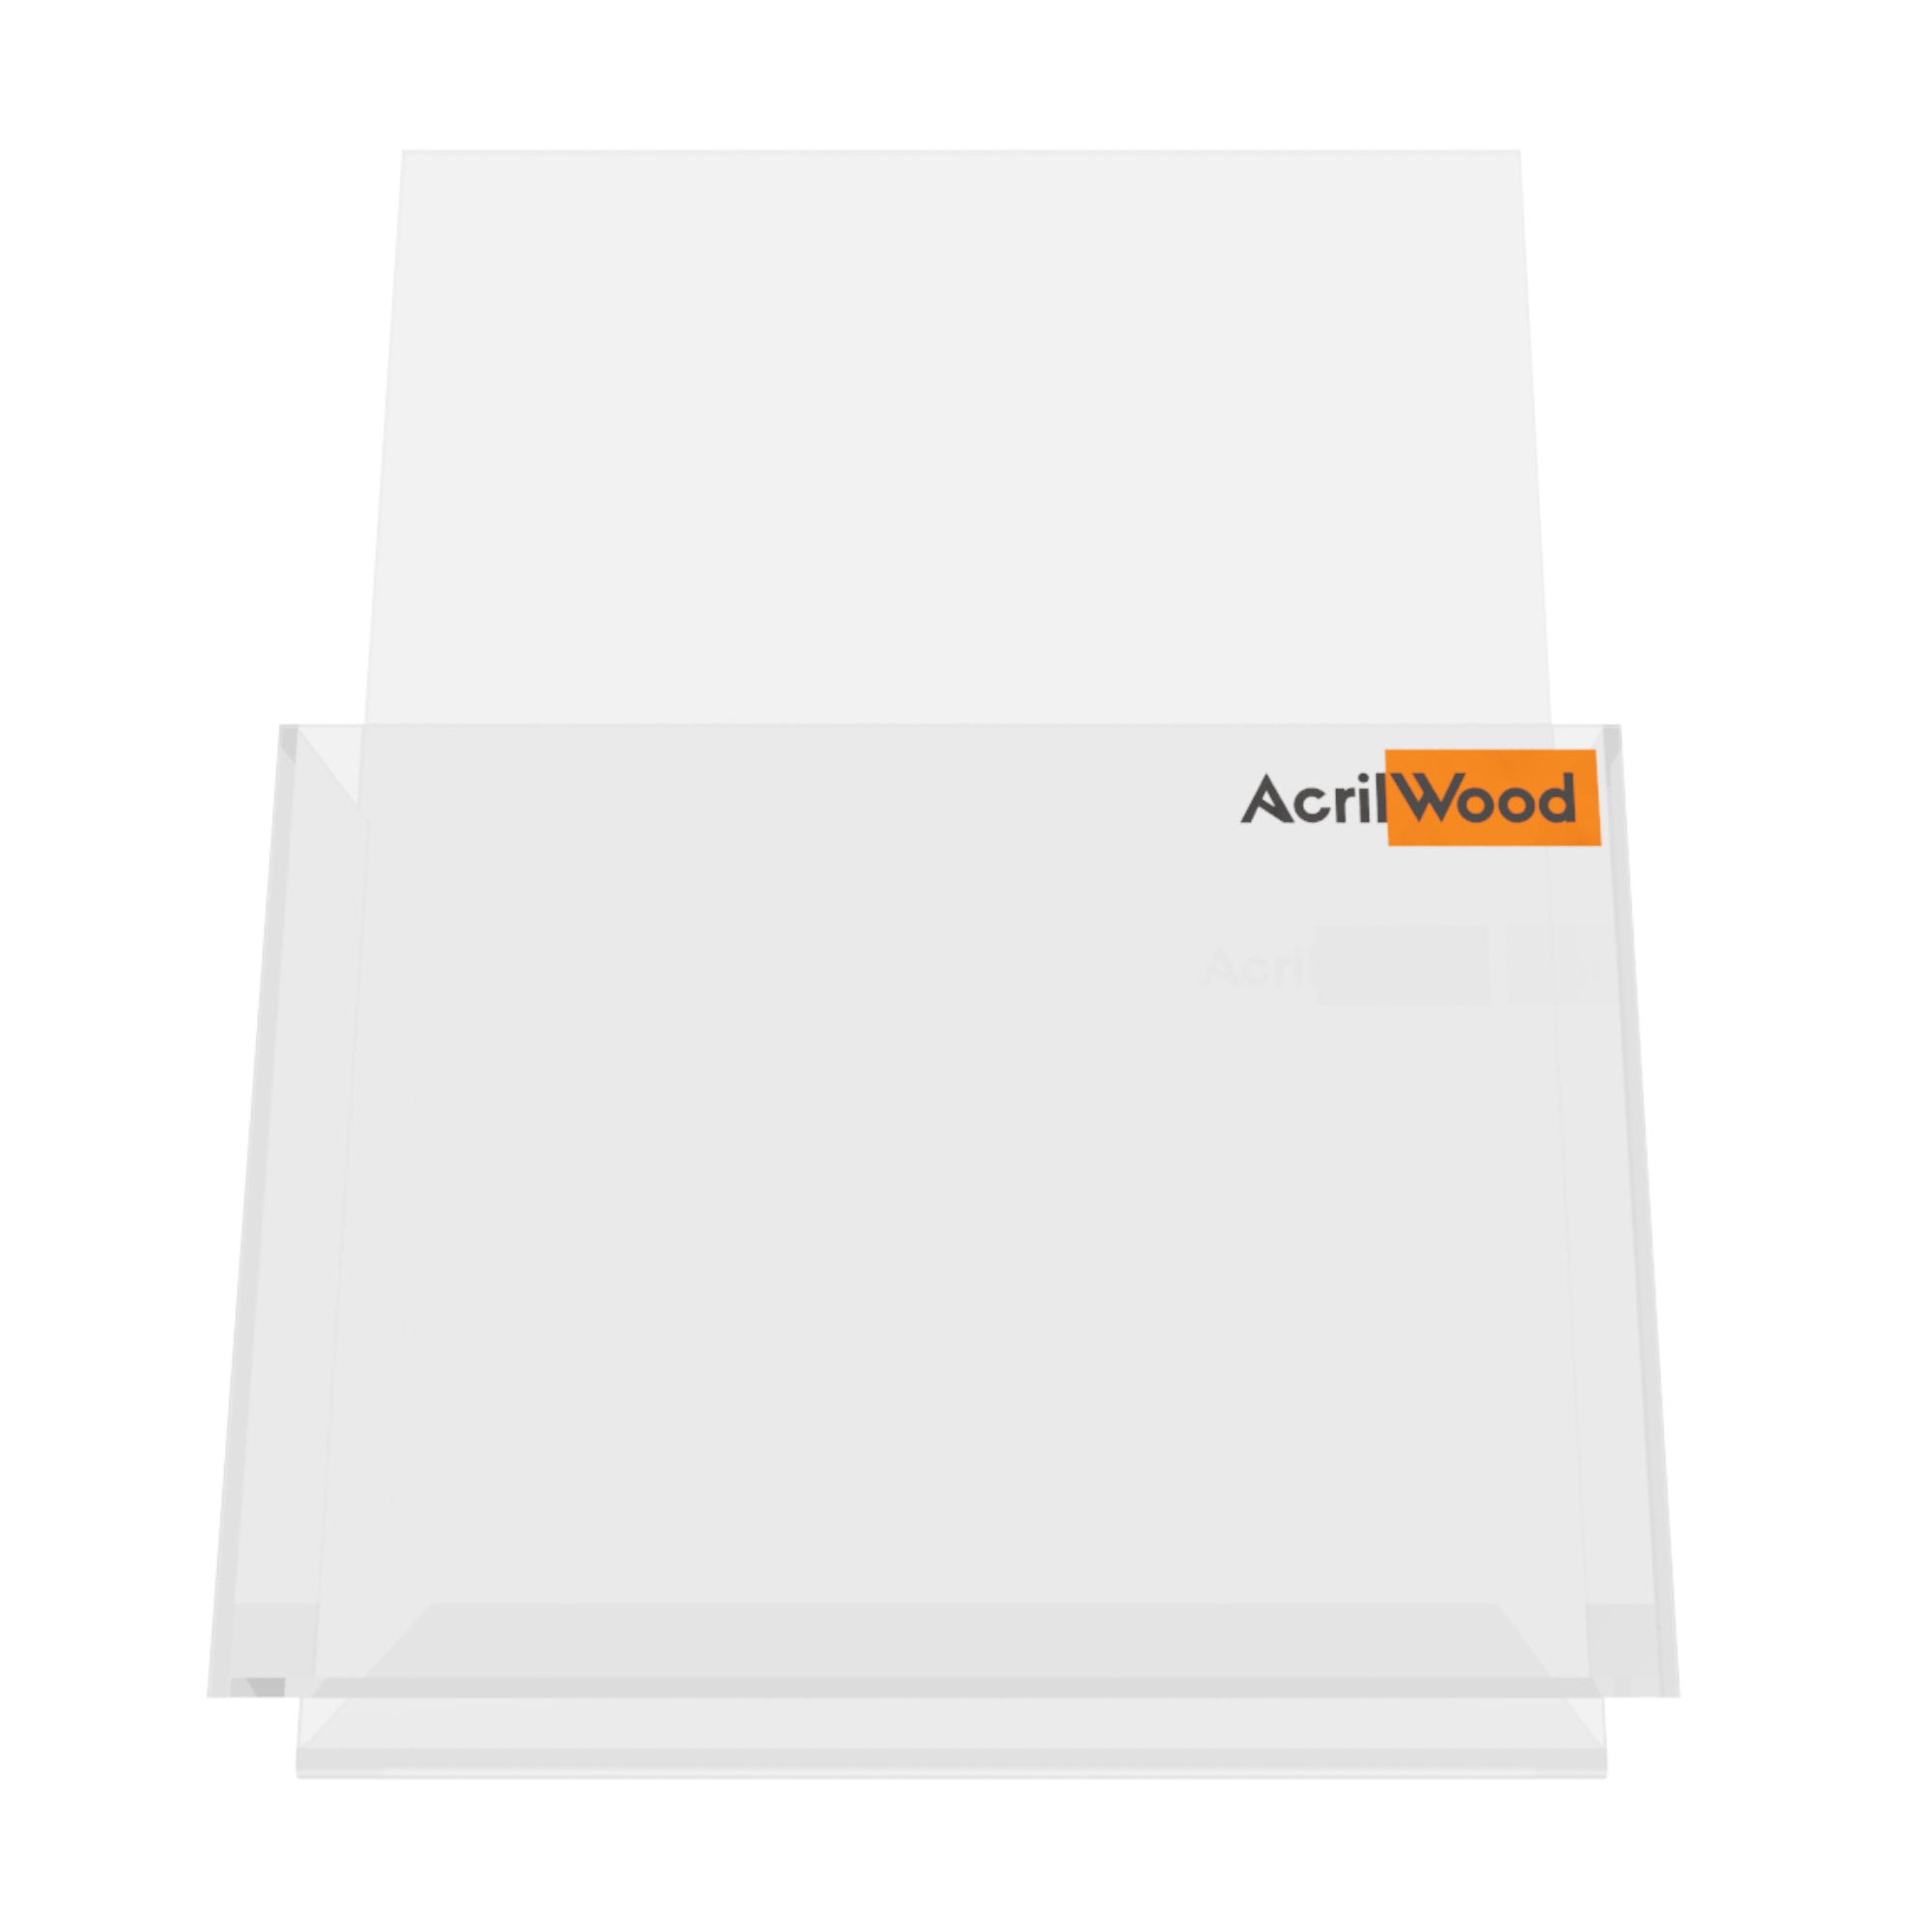 Imagem do Produto Display Porta Folder A5 em Acrílico de Balcão Vertical